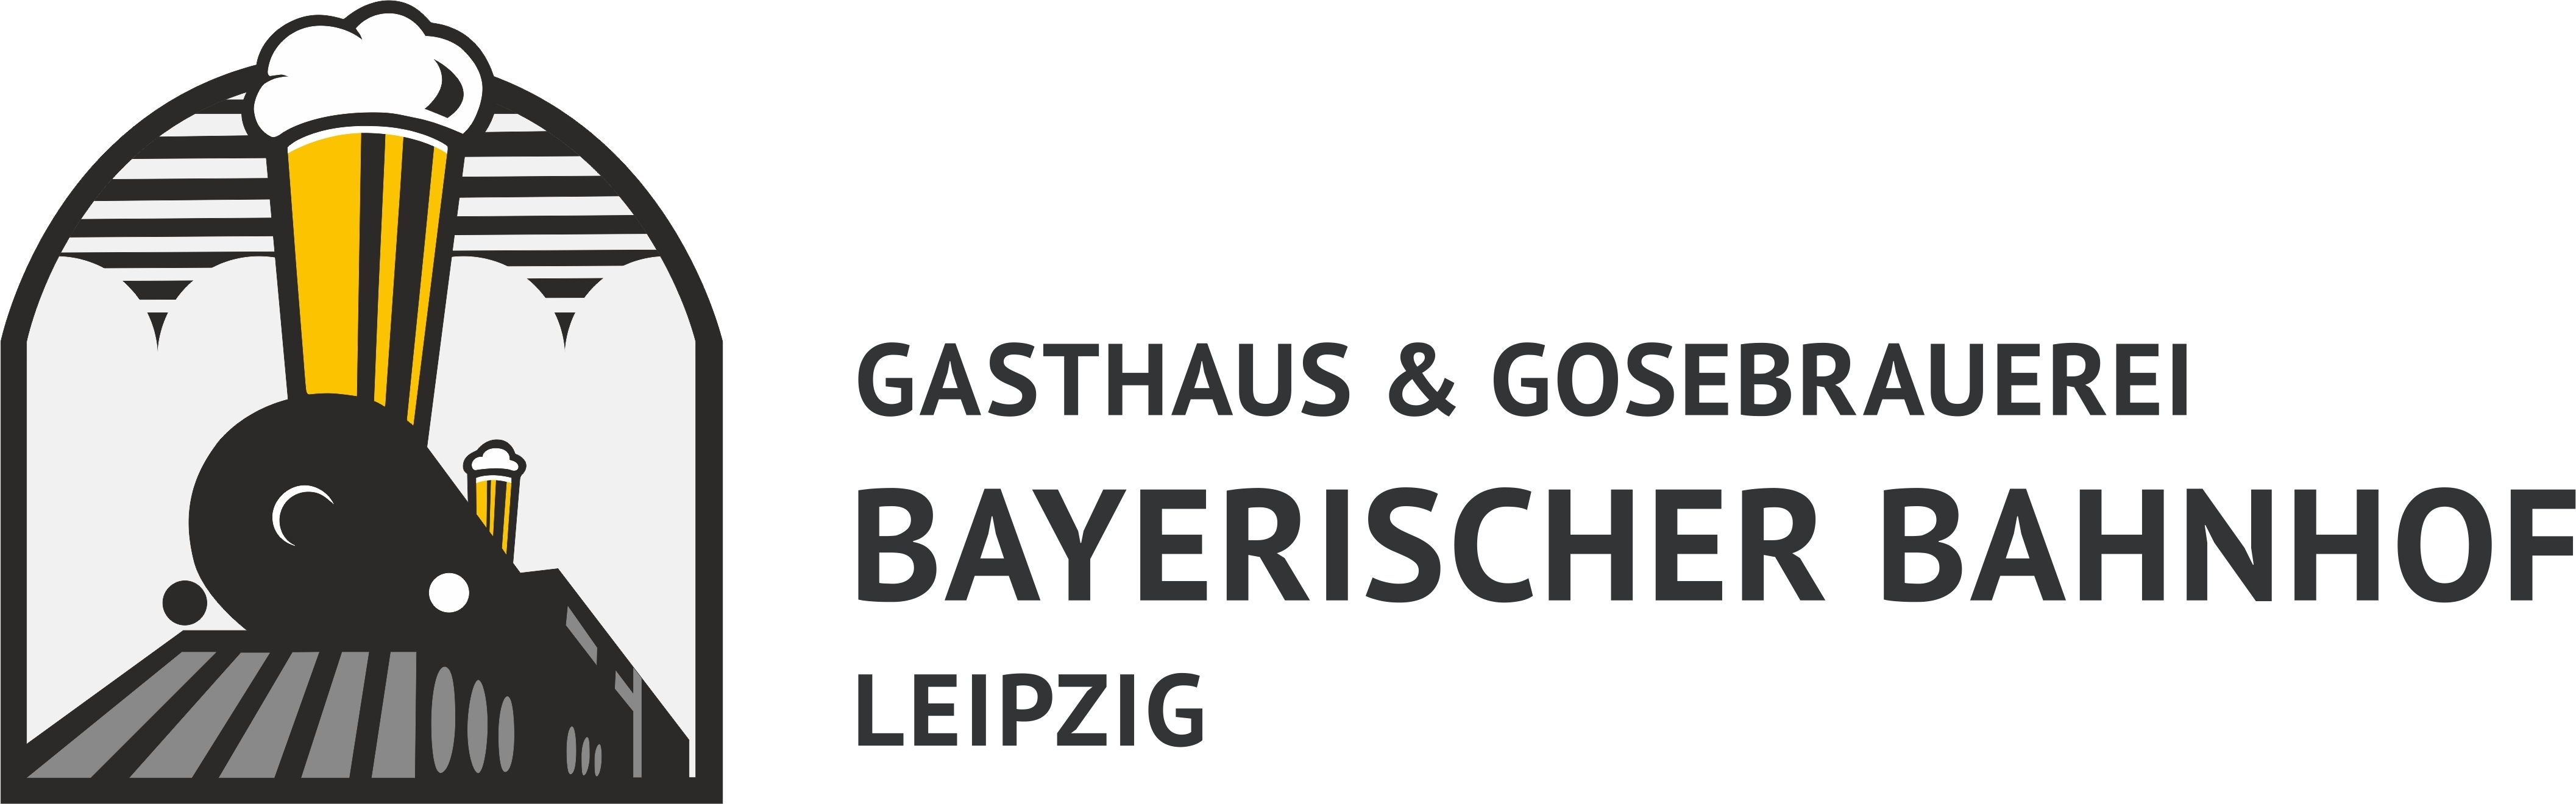 Bayerischer Bahnhof Webshop